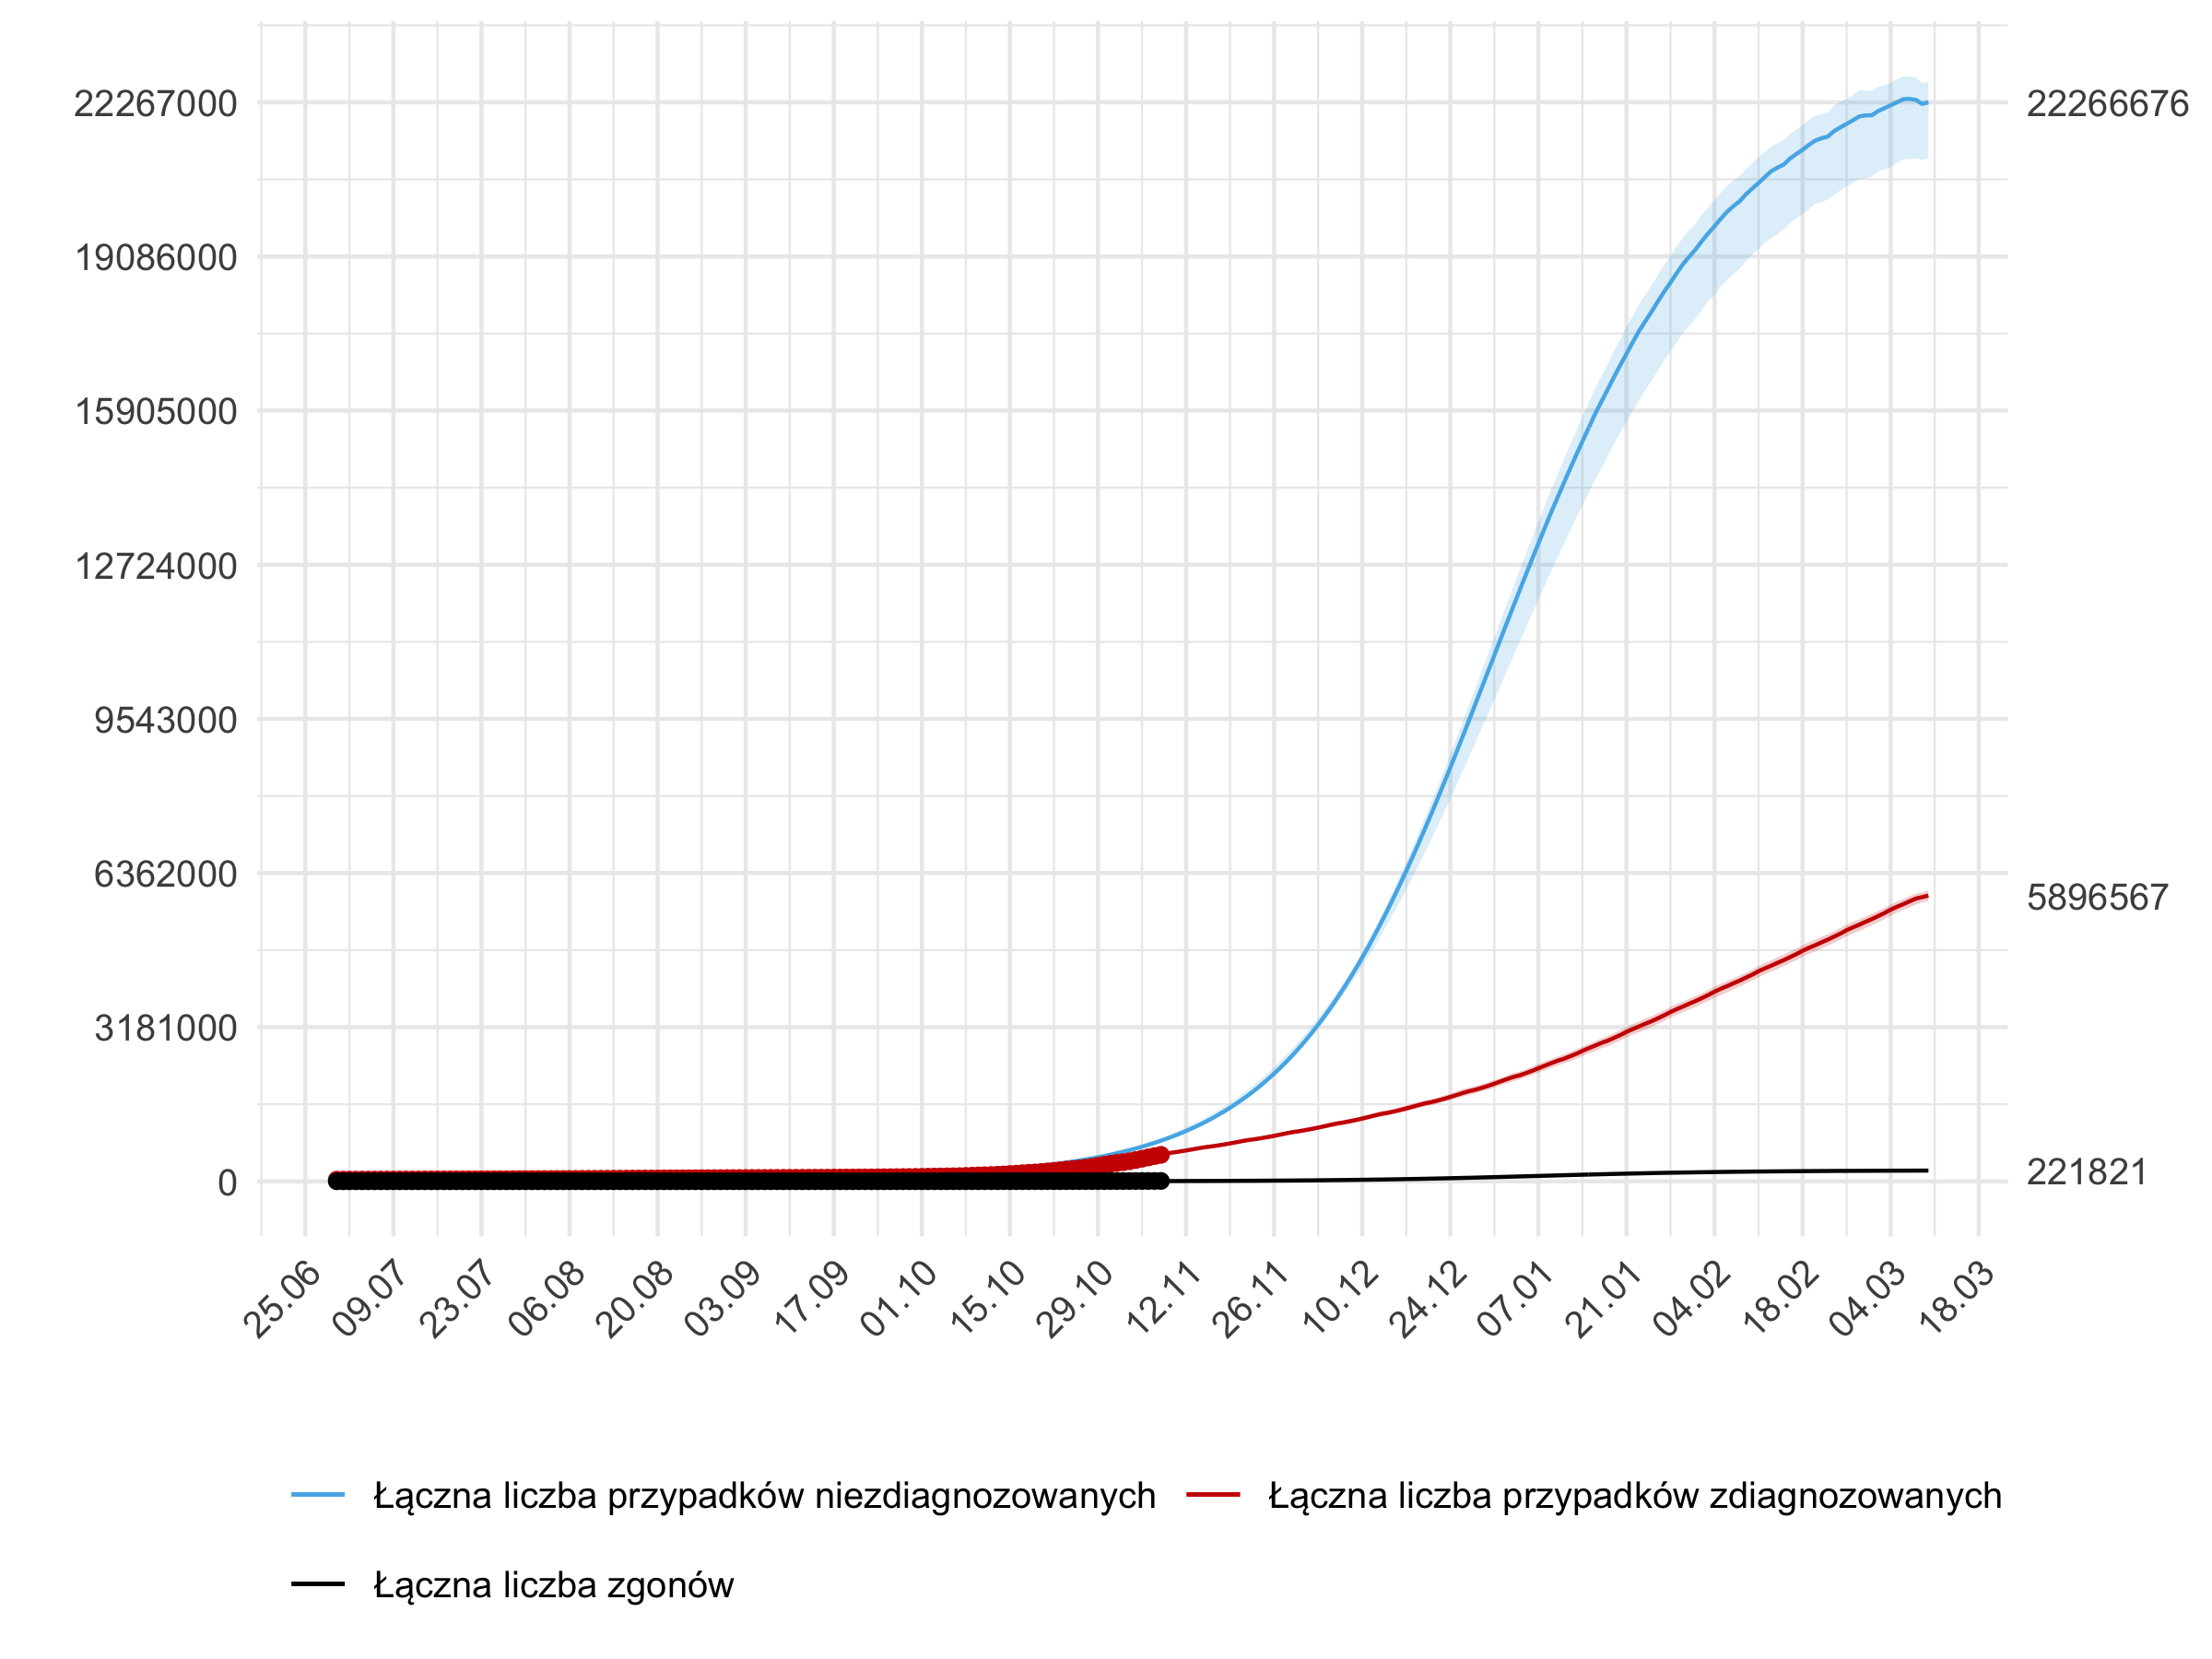 Długoterminowa prognoza łącznej liczby rozpoznań zdiagnozowanych (czerwona linia) i niezdiagnozowanych (niebieska) w modelu stochastycznym.